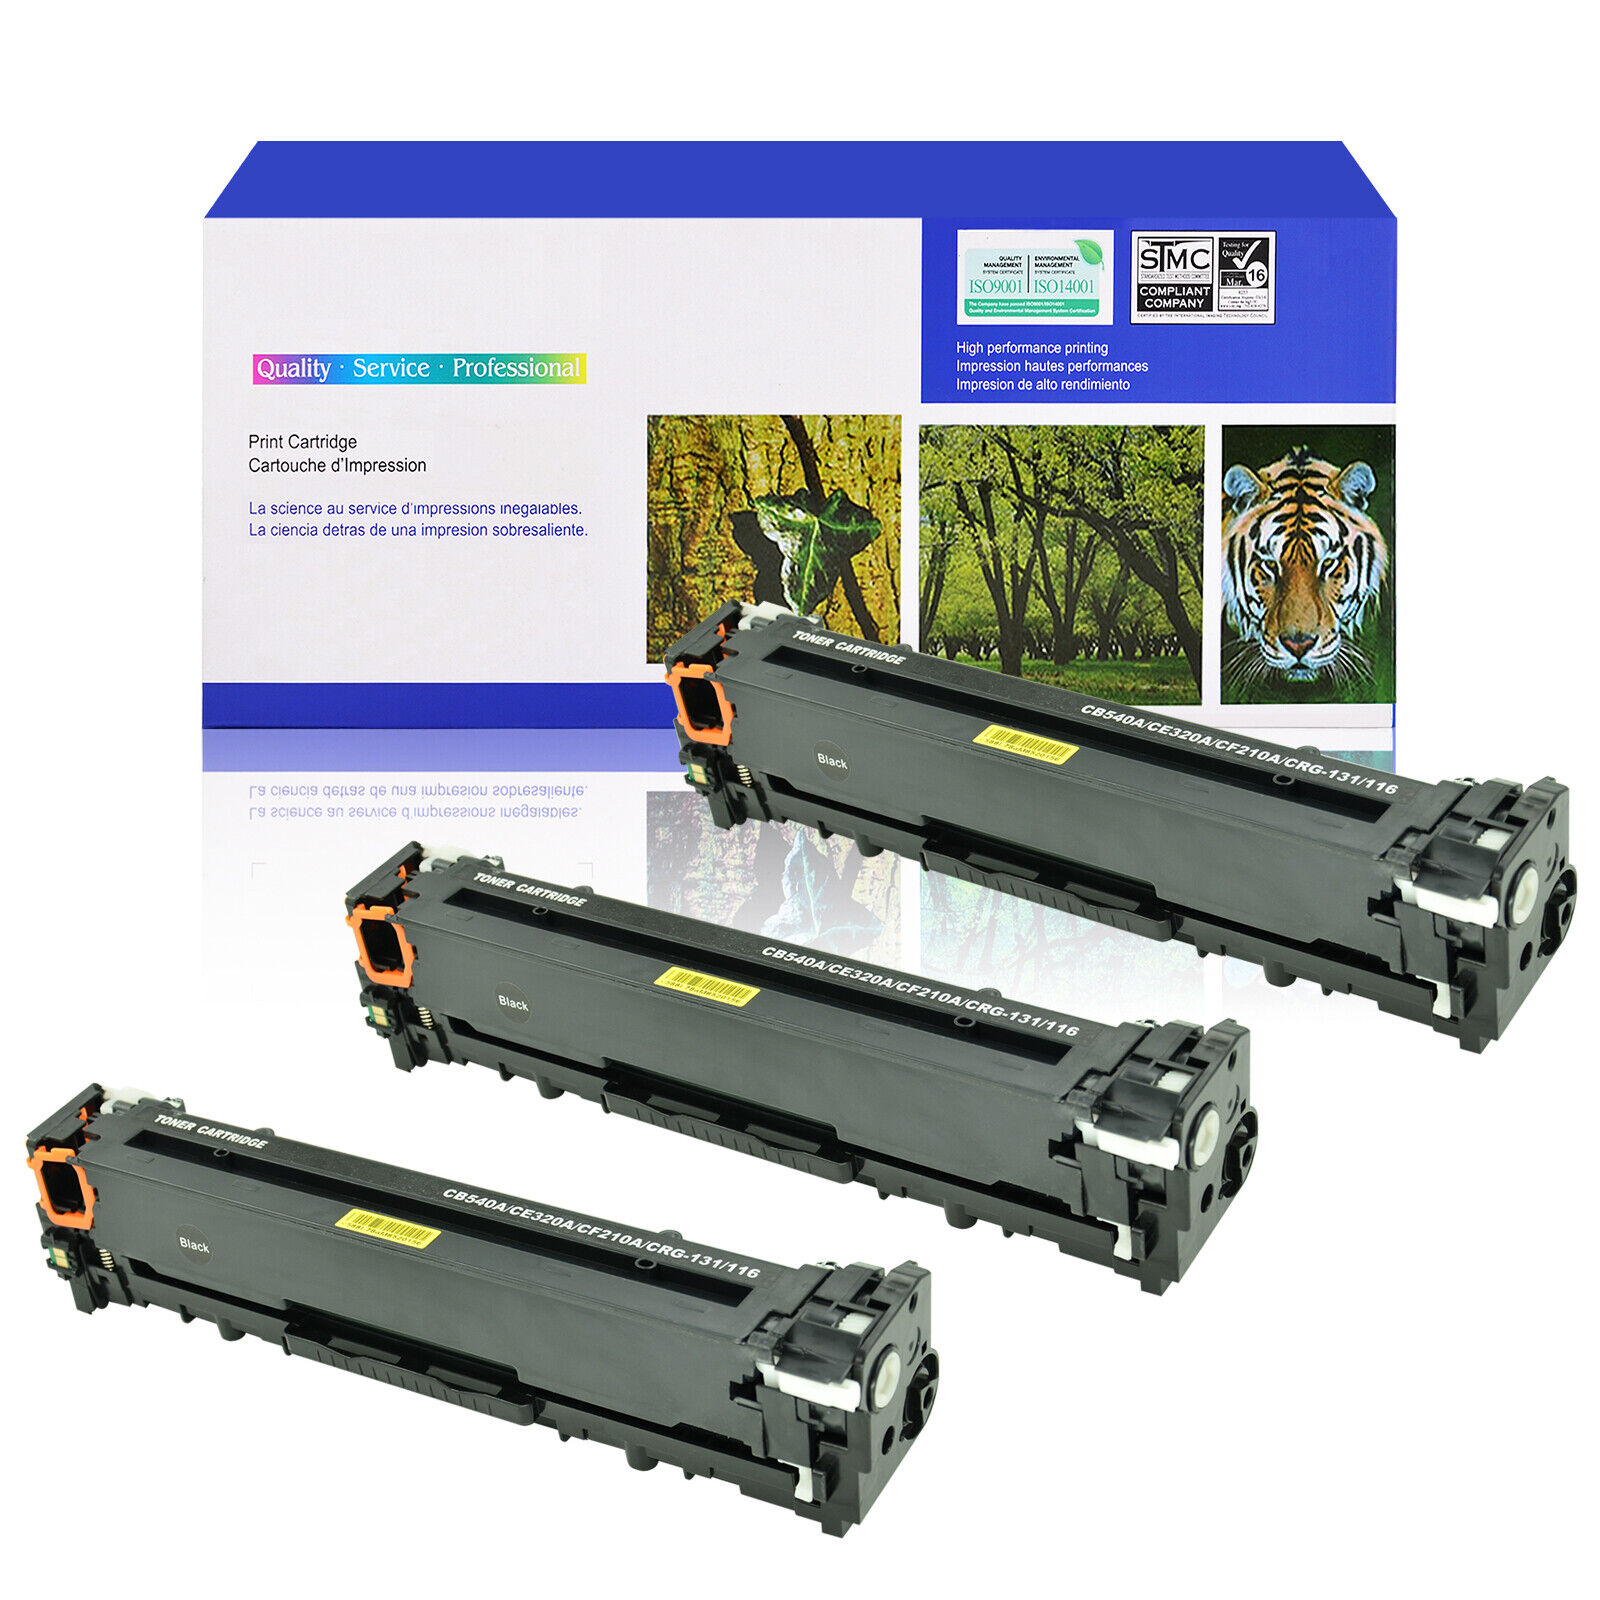 3PK CE320A 128A Black Toner Cartridge For HP Color Laserjet Pro CM1415fnw CP1525